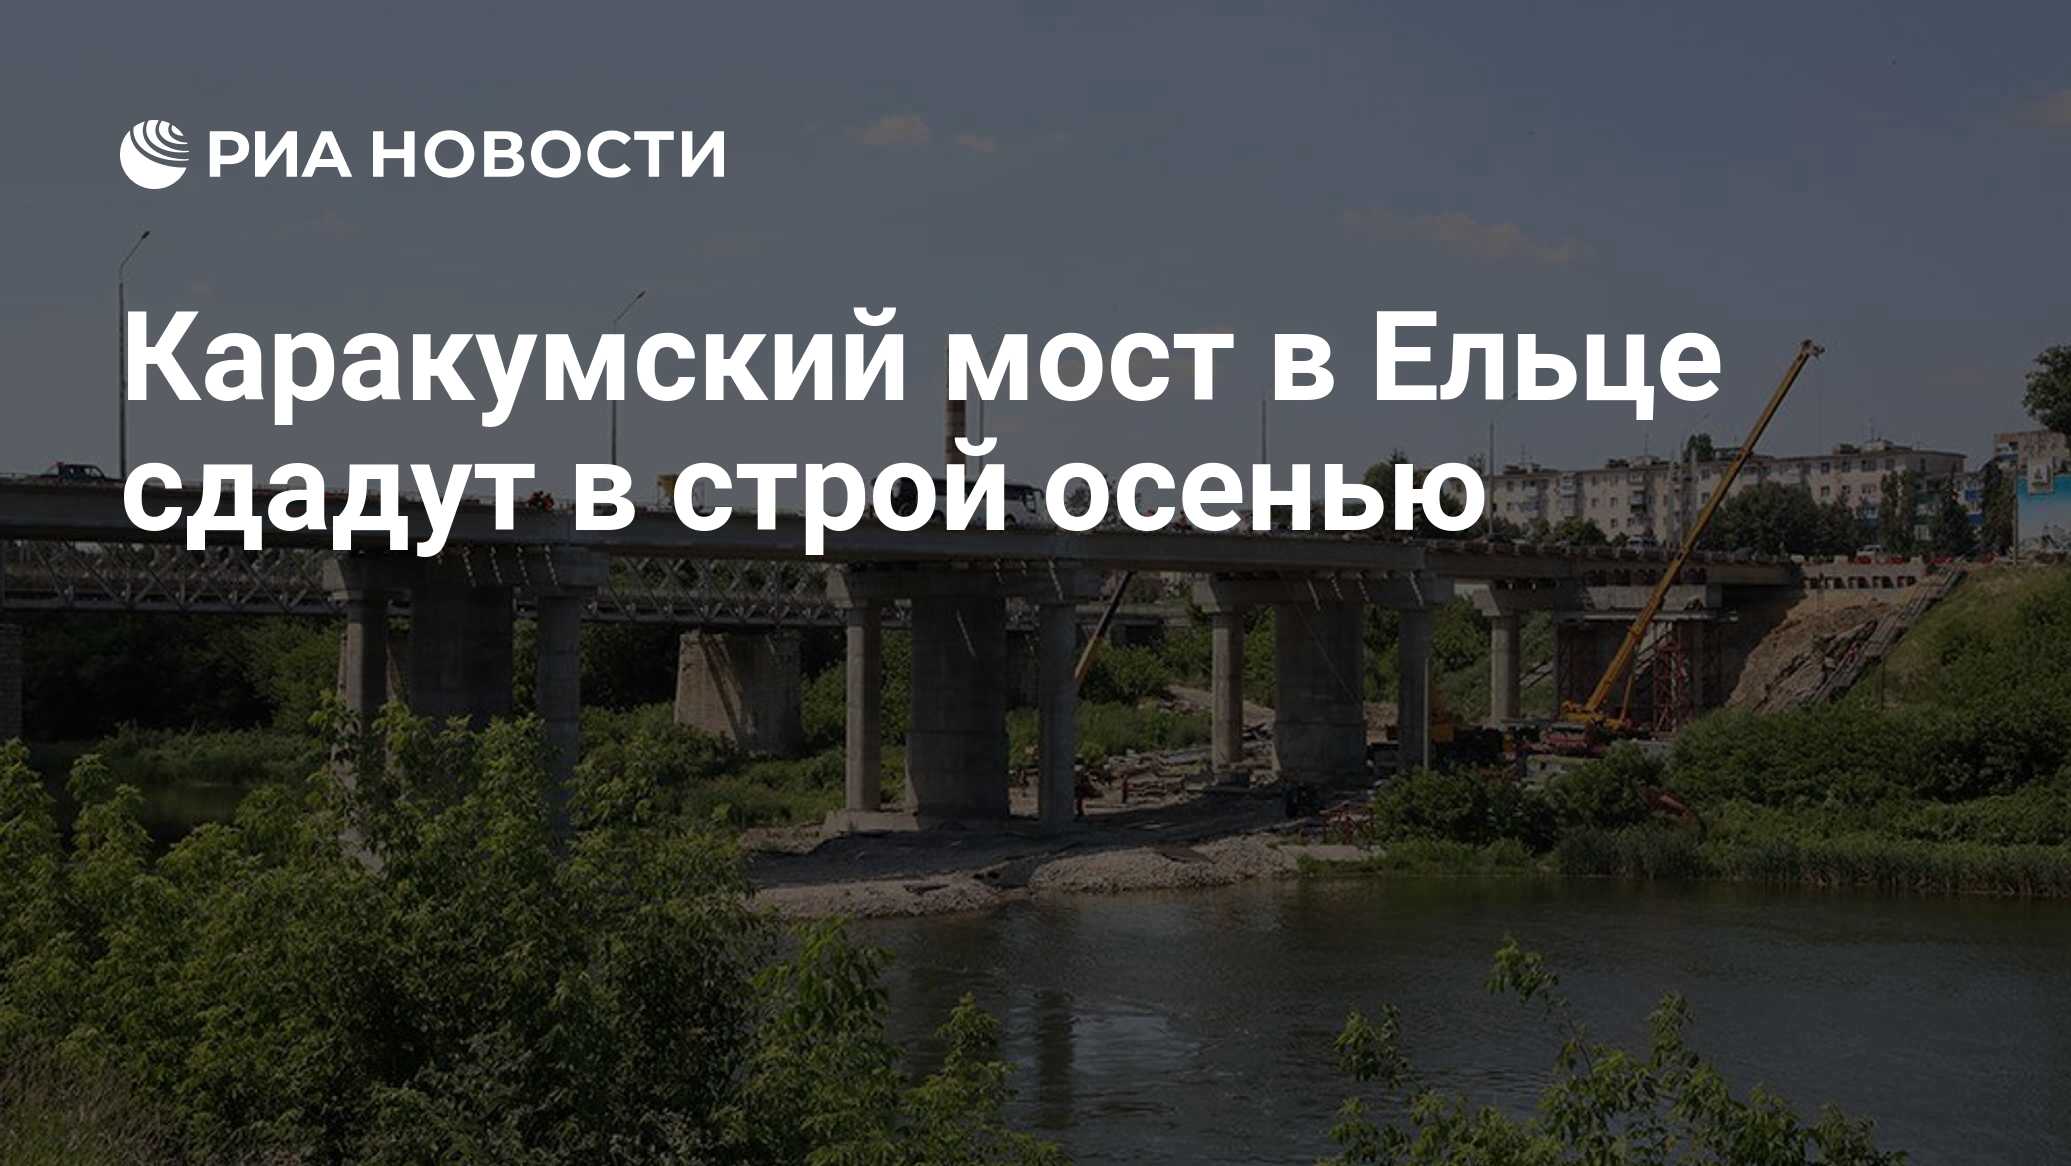 Каракумский мост в Ельце сдадут в строй осенью - РИА Новости, 12.07.2021